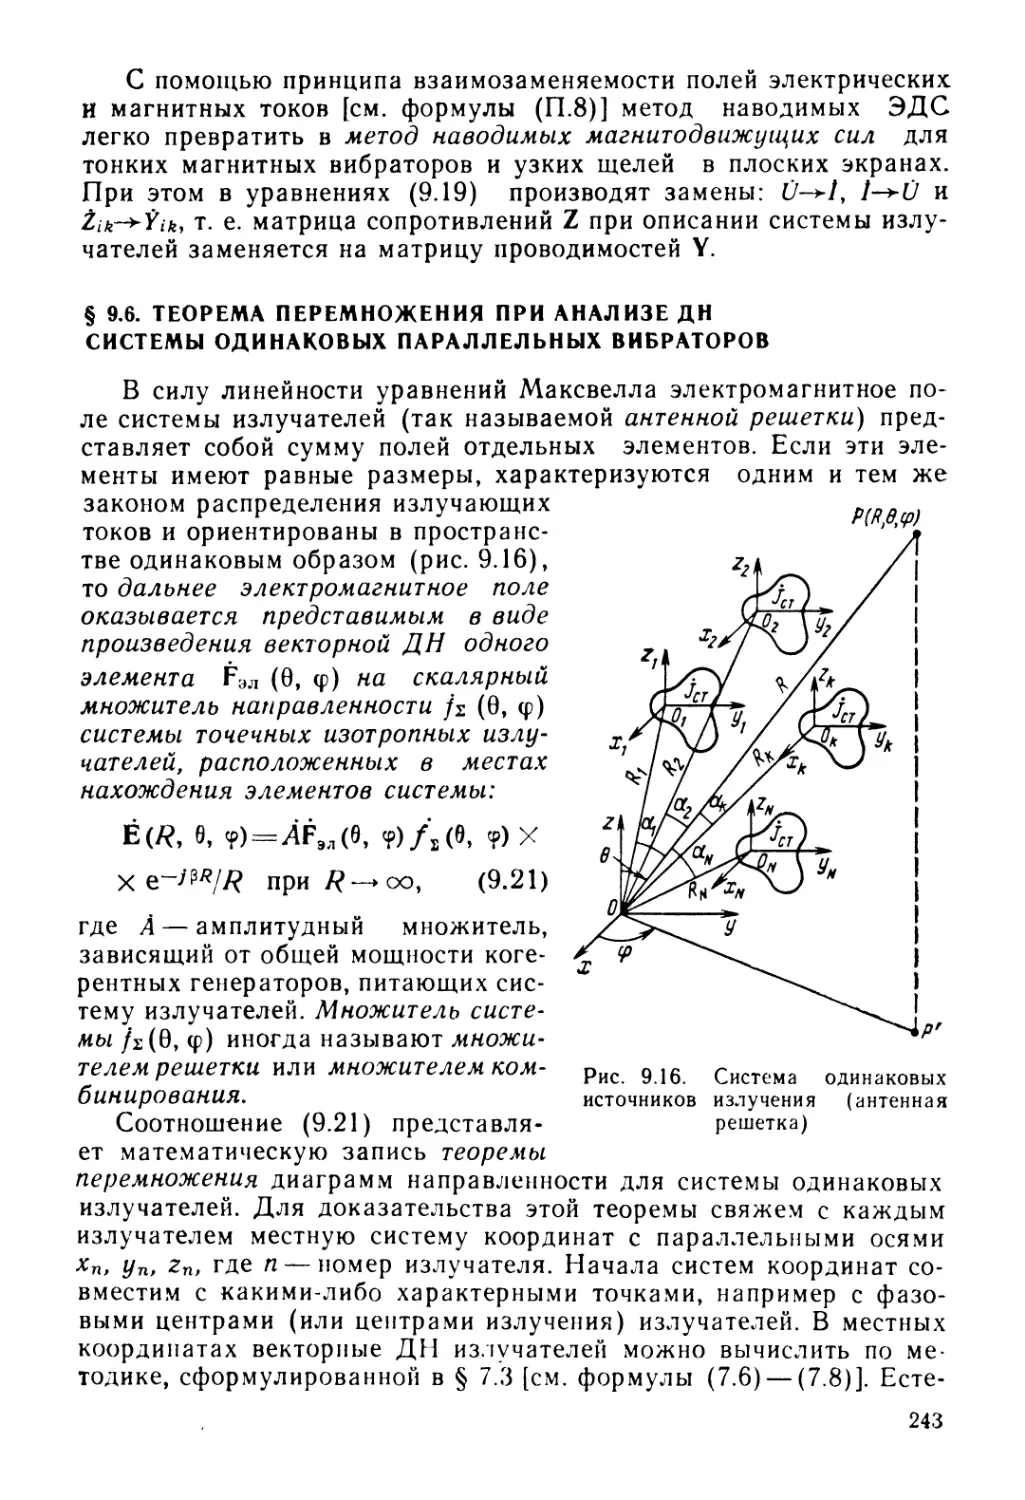 § 9.6. Теорема перемножения при анализе ДН системы одинаковых параллельных вибраторов